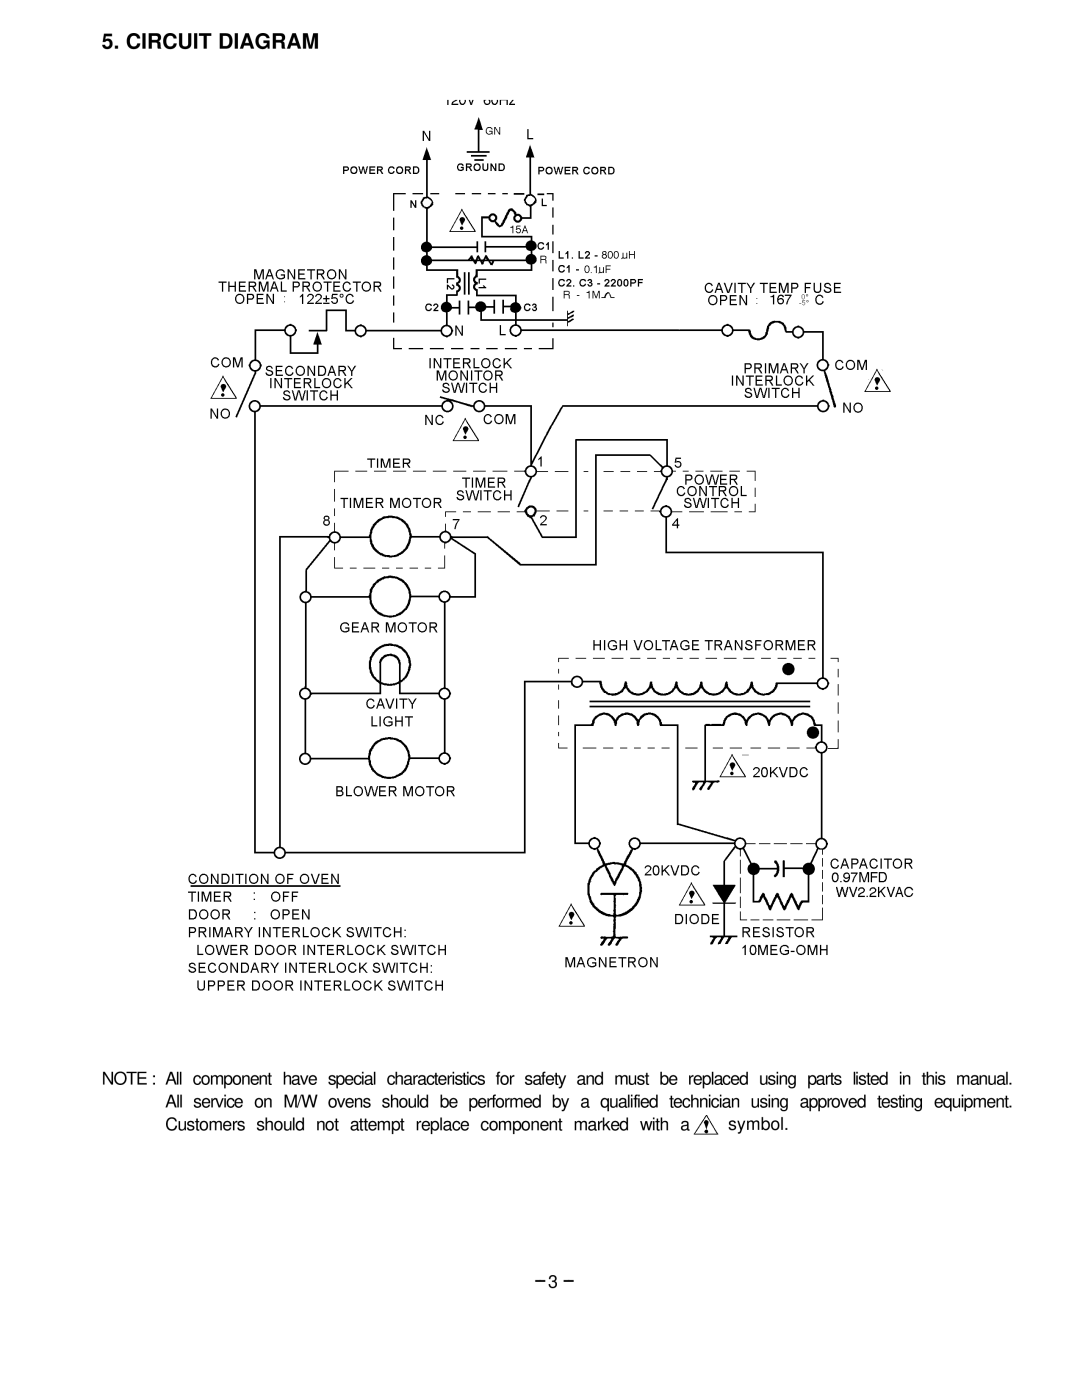 Garland EM-S85 service manual Circuit Diagram 